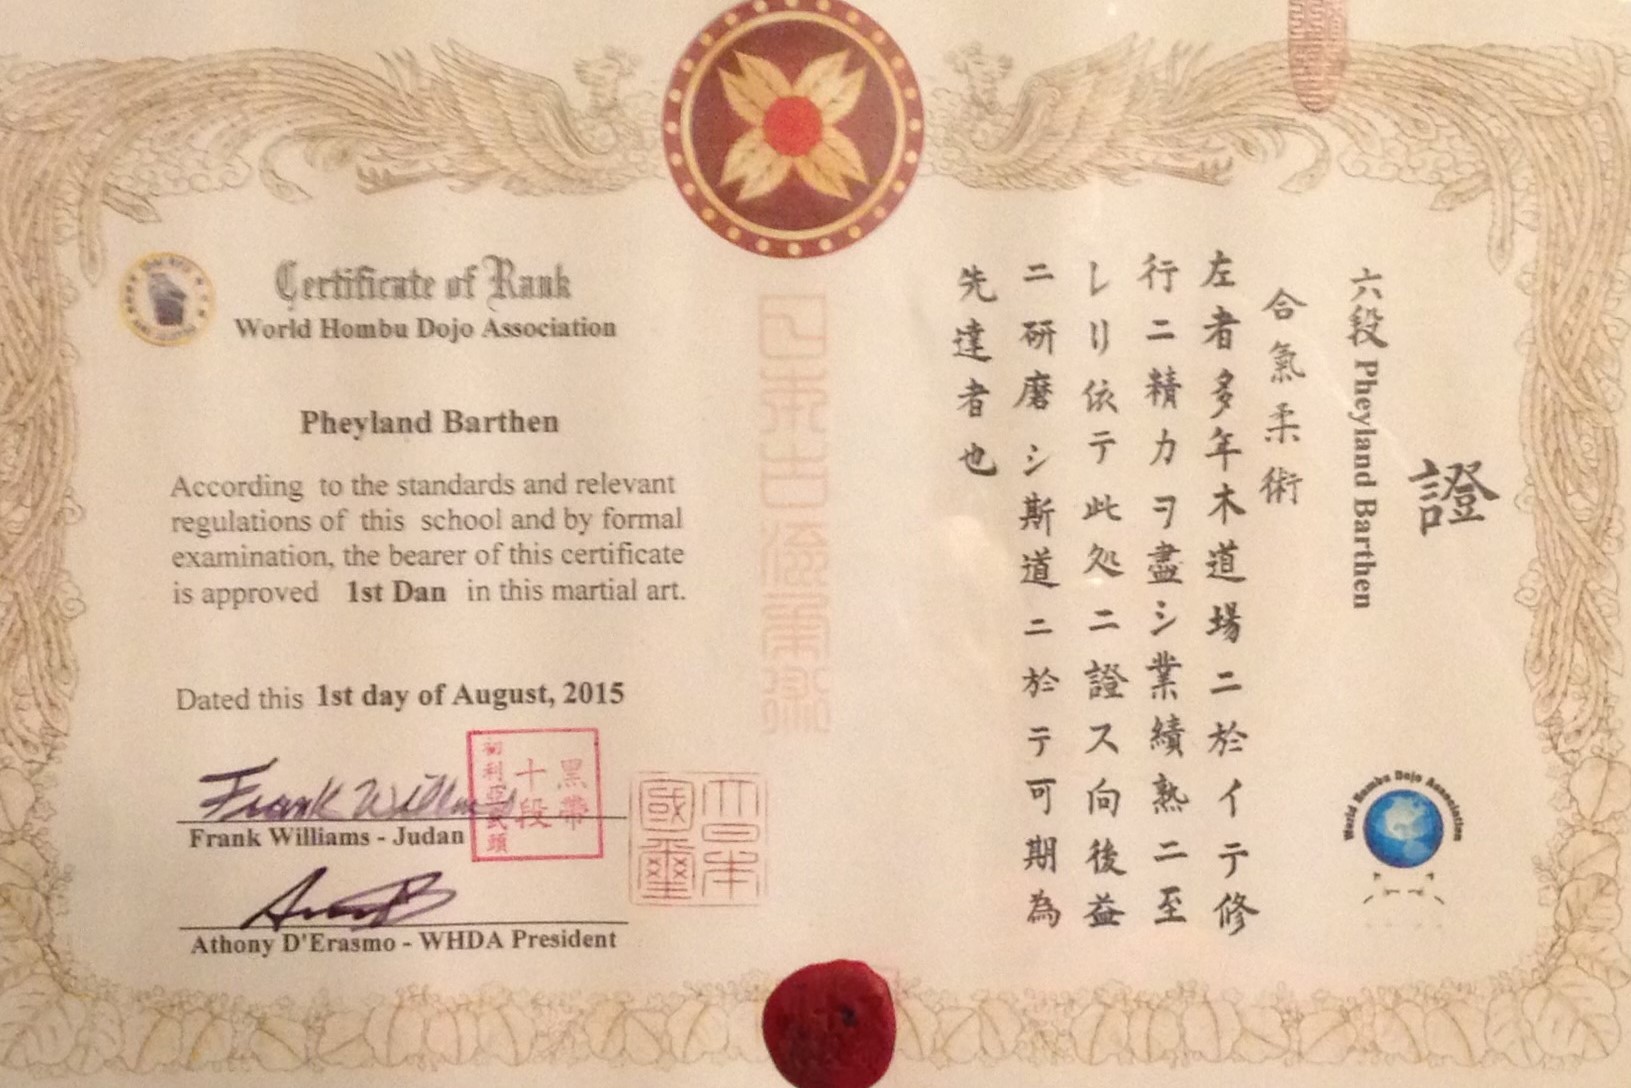 Pheyland Barthen's 1st dan certificate